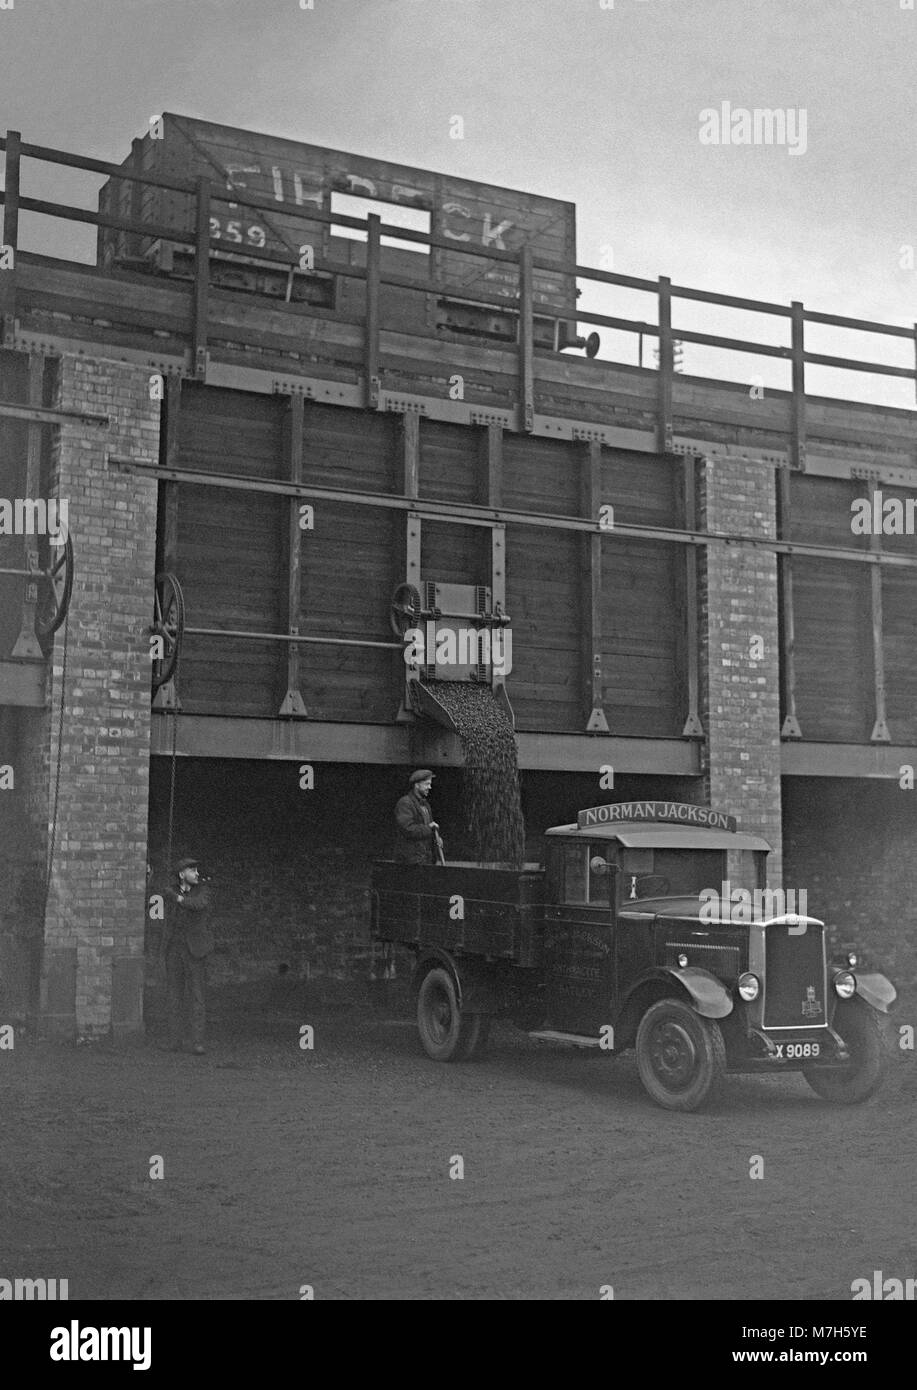 Le charbon d'être chargés à bord d'un camion de livraison via une chute verticale, charbon (staithe ou shute) directement à partir d'un wagon de chemin de fer au-dessus c. 1950. Il s'agissait d'une vision commune à embranchements ferroviaires lorsque le charbon a été utilisé comme le principal élément de chauffage domestique après la Seconde Guerre mondiale - celui-ci était situé près de Leeds, West Yorkshire, England, UK Banque D'Images